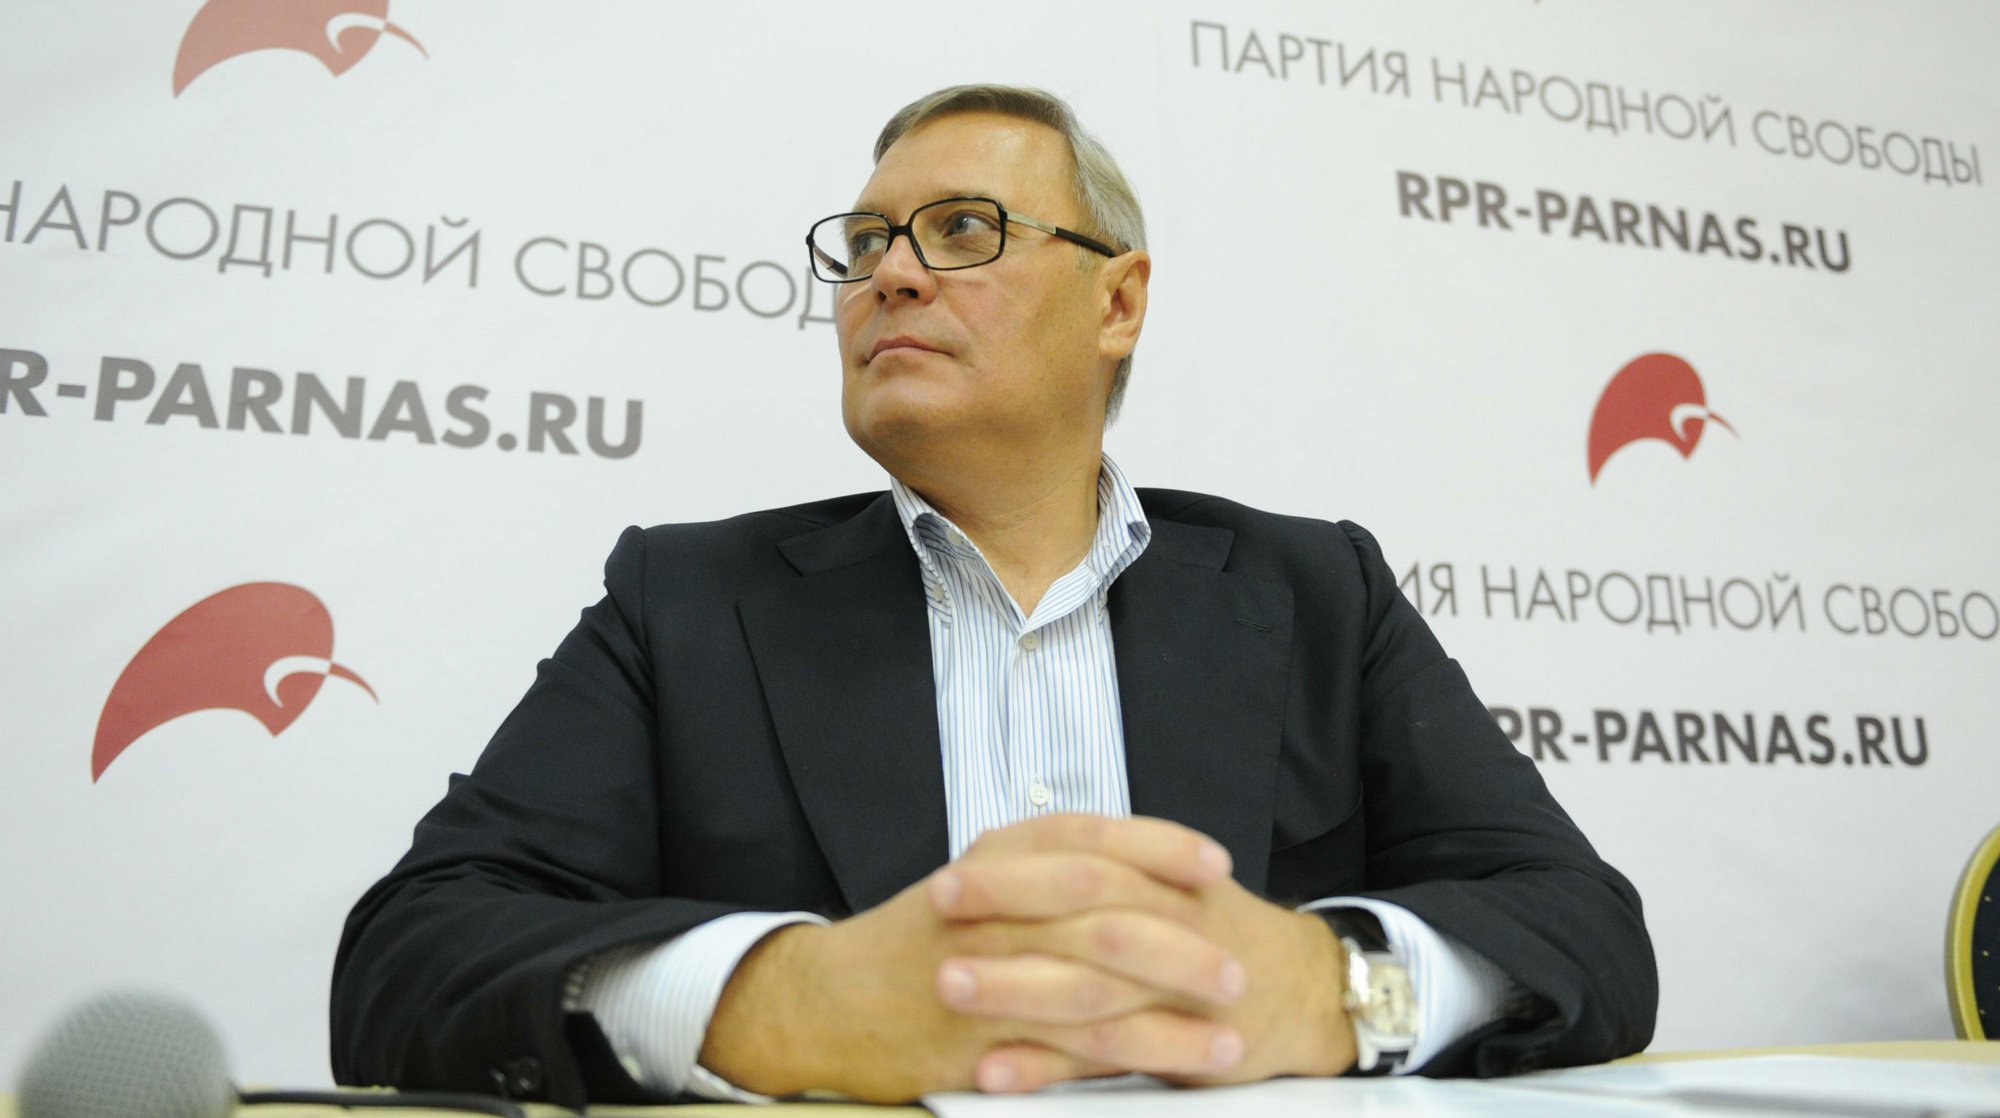 Dailystorm - Касьянов предложил создать коалицию Навальному, Собчак и Явлинскому